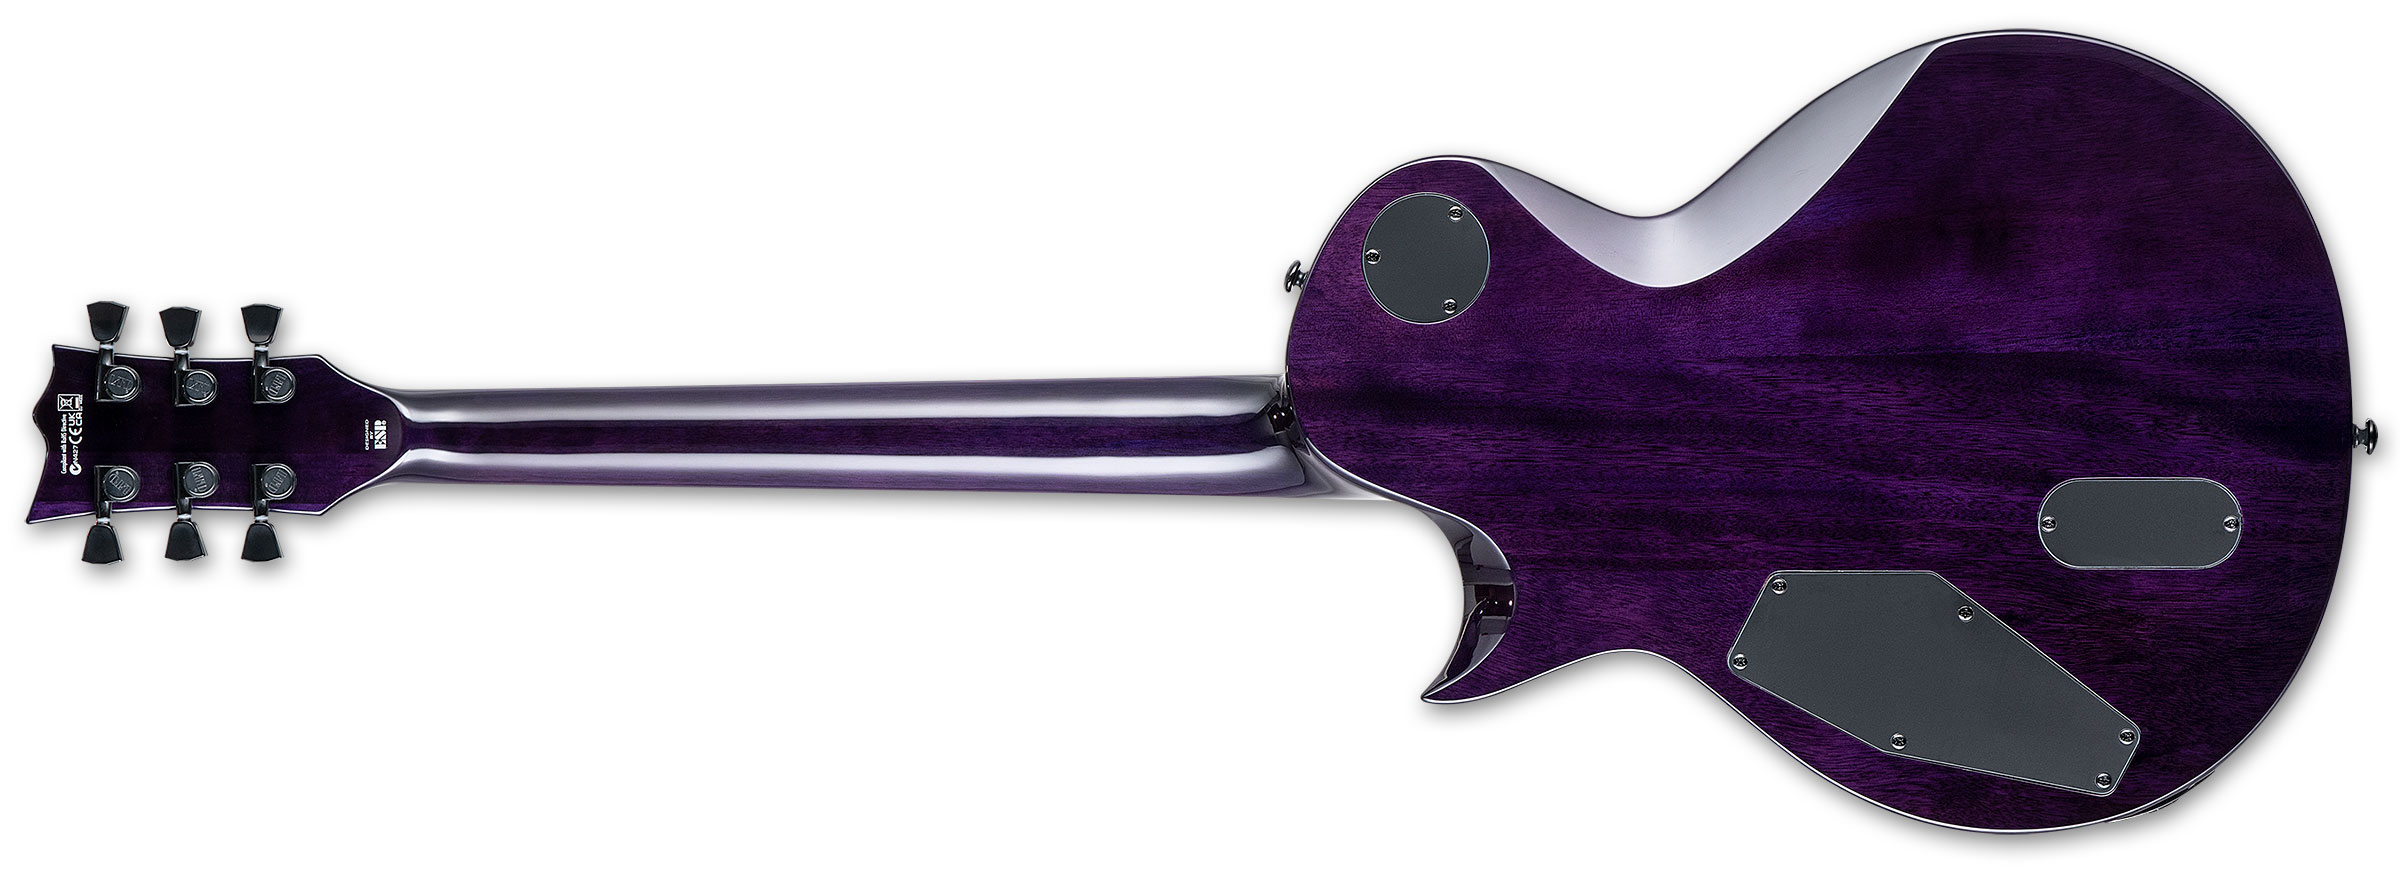 Ltd Ec-1000 Hh Ht Emg Eb - See Thru Purple Sunburst - Guitare Électrique Single Cut - Variation 2